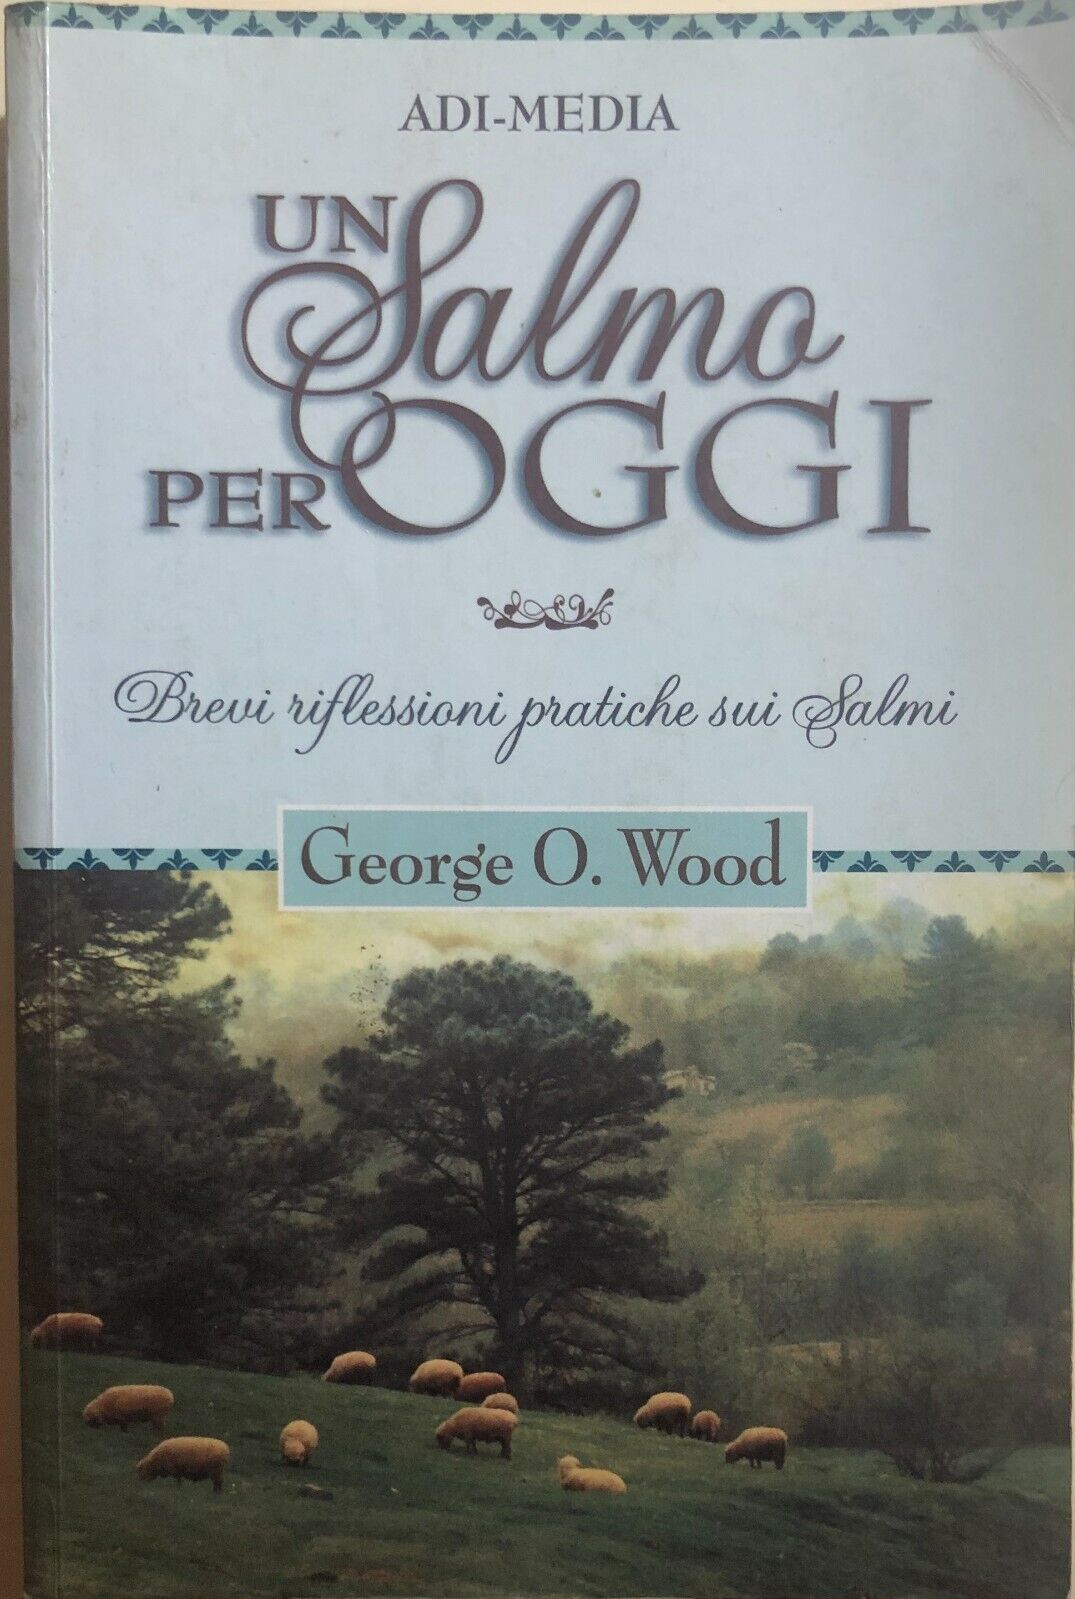 Un Salmo per oggi di George O. Wood, 2005, Adi-media libro usato